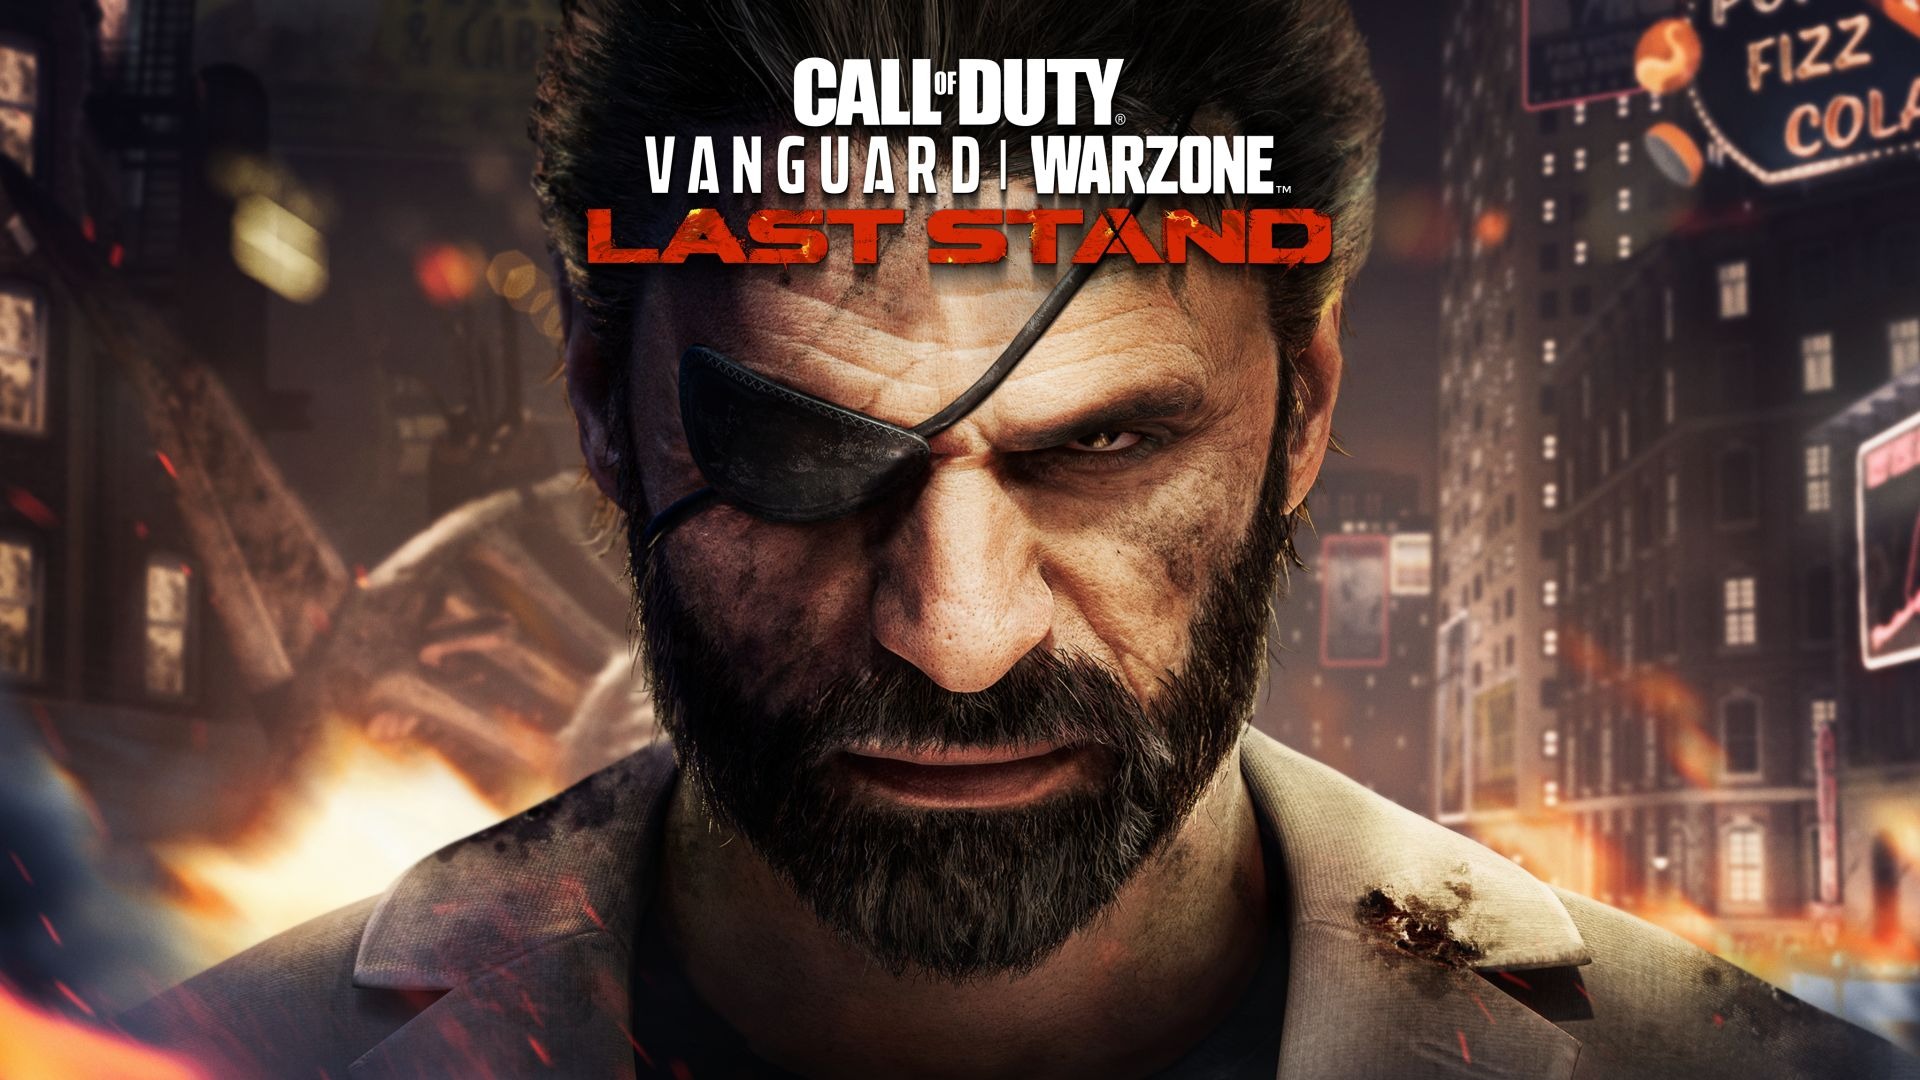 Découvrez la dernière saison de Call of Duty: Vanguard et Call of Duty: Warzone, Baroud d’Honneur, à partir du 24 août